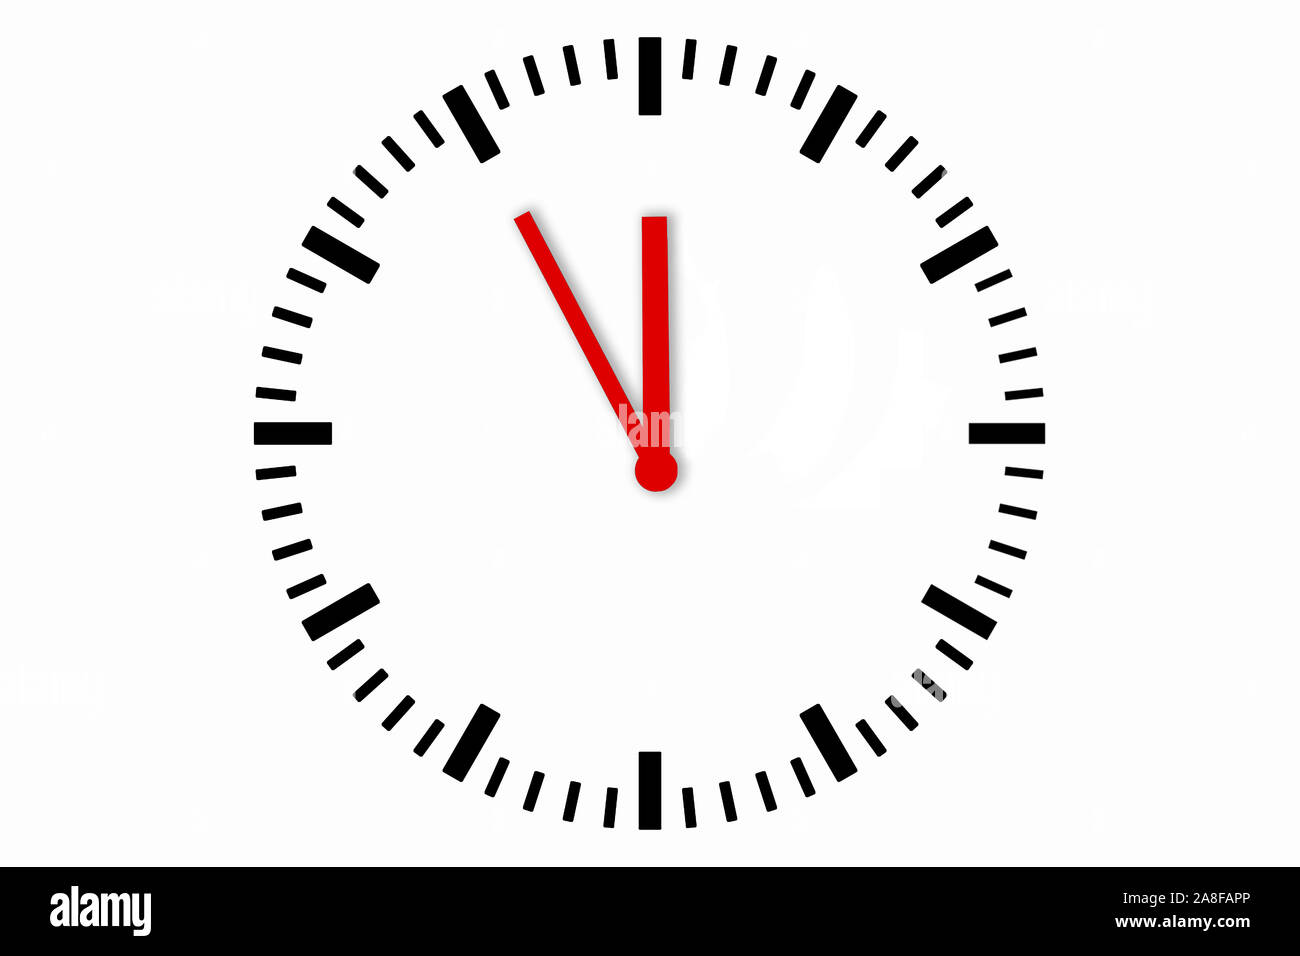 Uhr, Kalender, Timer, Uhren, Planung, Zeit, Zeitmesser, Uhrzeit, Text,  Texte, Zeiger, Zeitverschiebung, 5 vor 12, Fünf vor Zwölf Stockfotografie -  Alamy